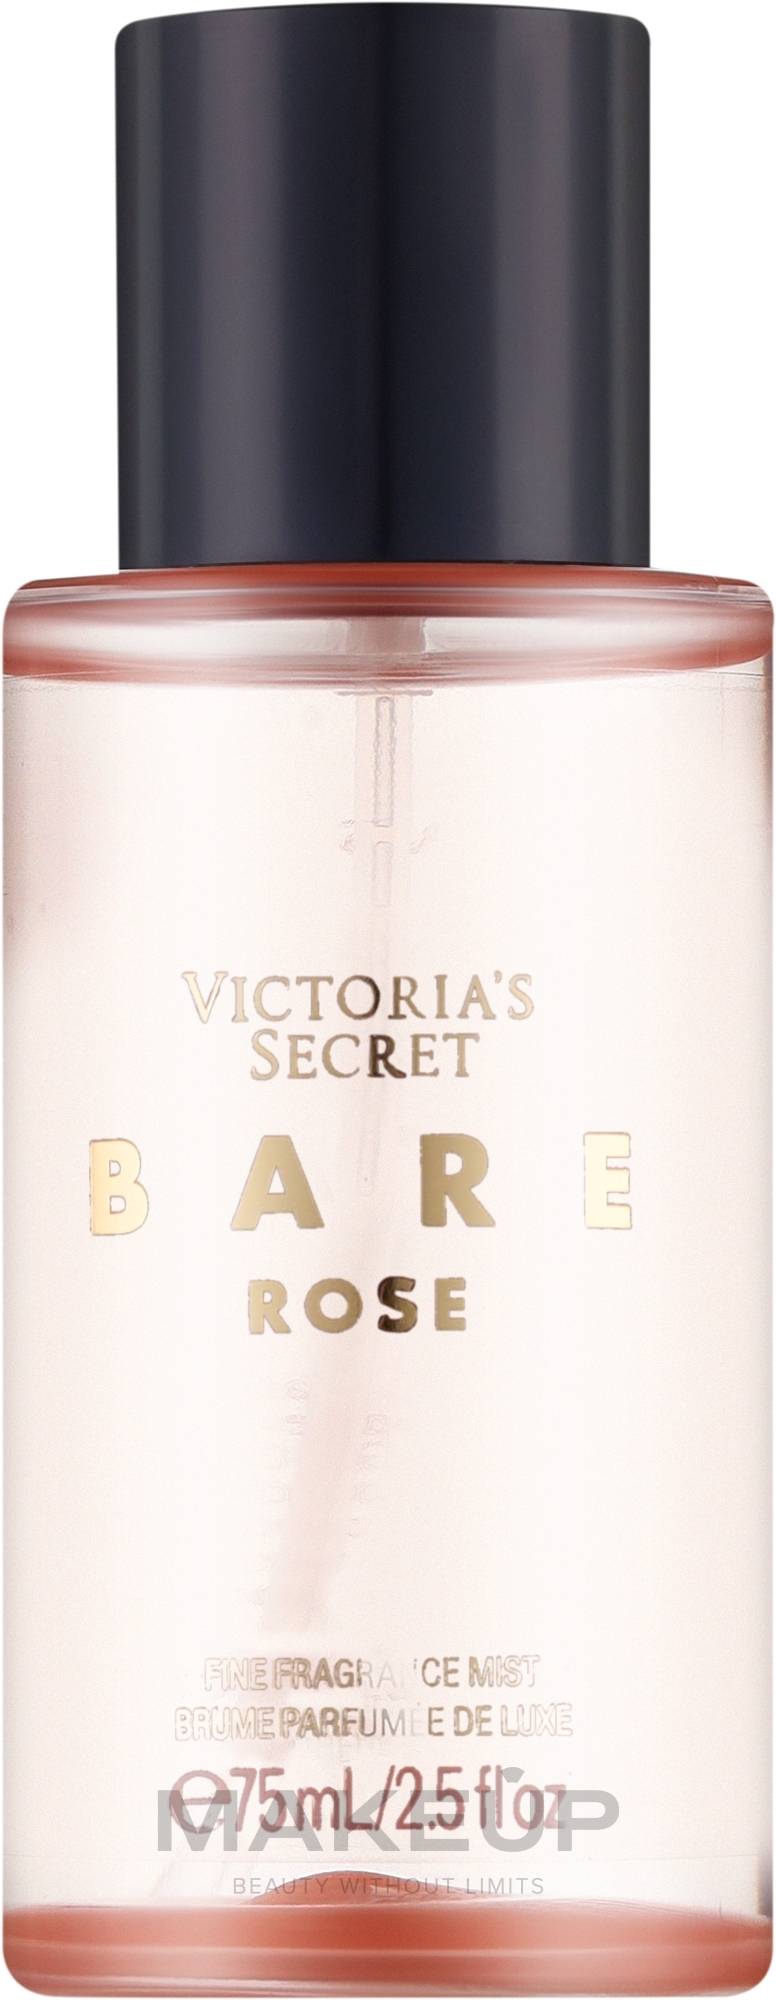 Victoria's Secret Bare Rose - Парфюмированный мист для тела — фото 75ml